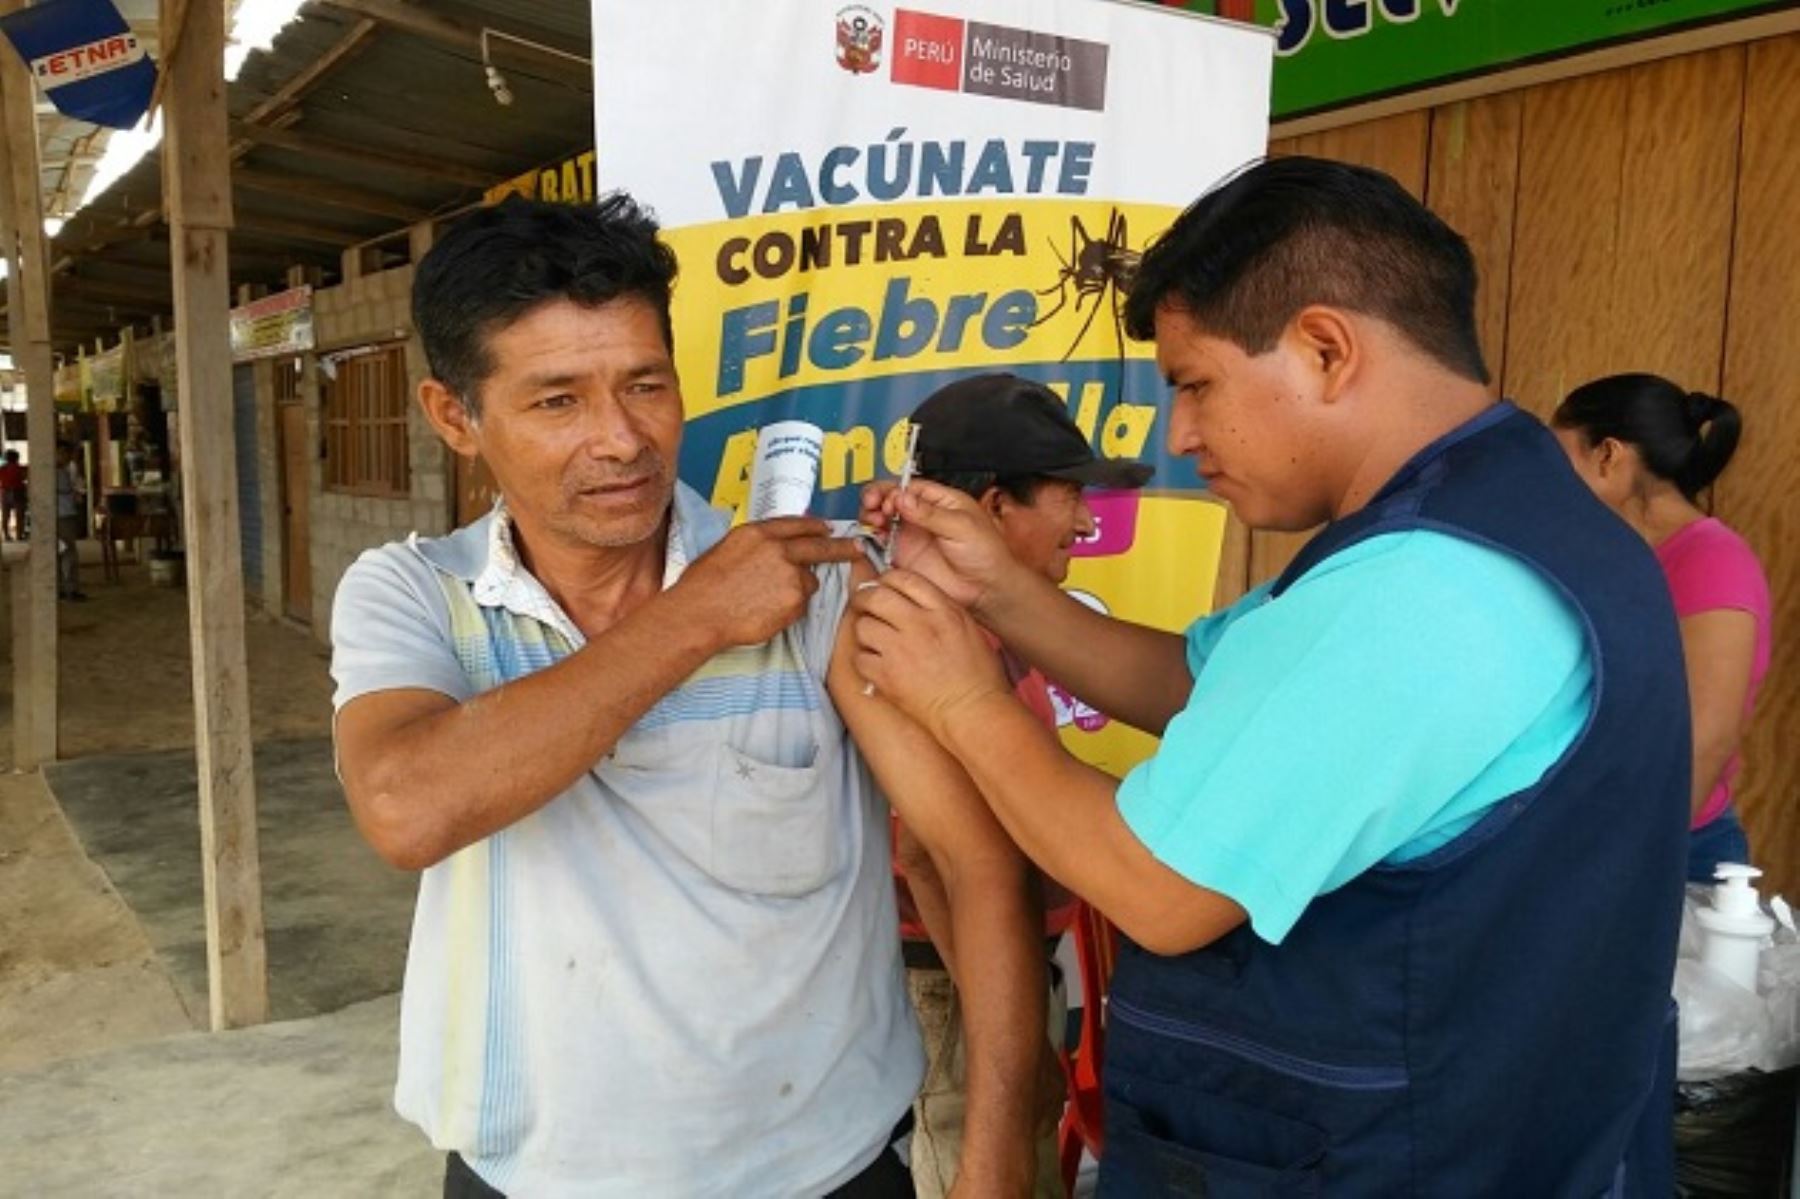 Como parte de las acciones de prevención contra la fiebre amarilla, el Ministerio de Salud (Minsa), en coordinación con la Red de Salud Pichanaqui, inició una campaña de vacunación contra esta enfermedad en esa importante ciudad de la selva central, donde se beneficiarán 1,600 personas.